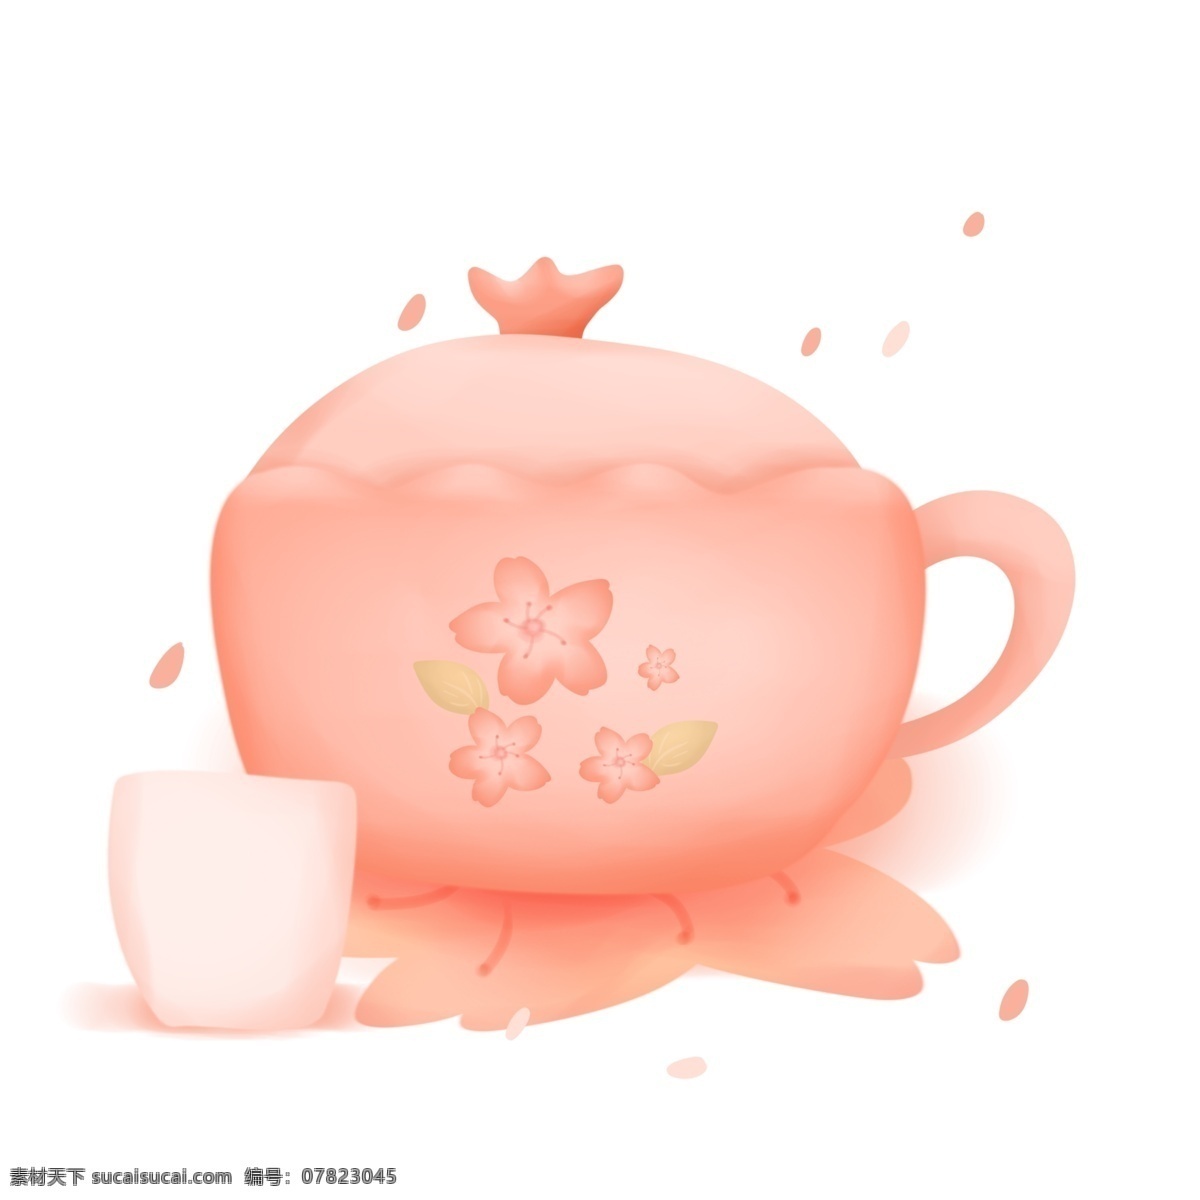 樱花 季 粉色 水壶 盖碗 日式 创意 陶瓷 樱花季 生活 茶杯 樱花瓣 杯垫 装饰 家居